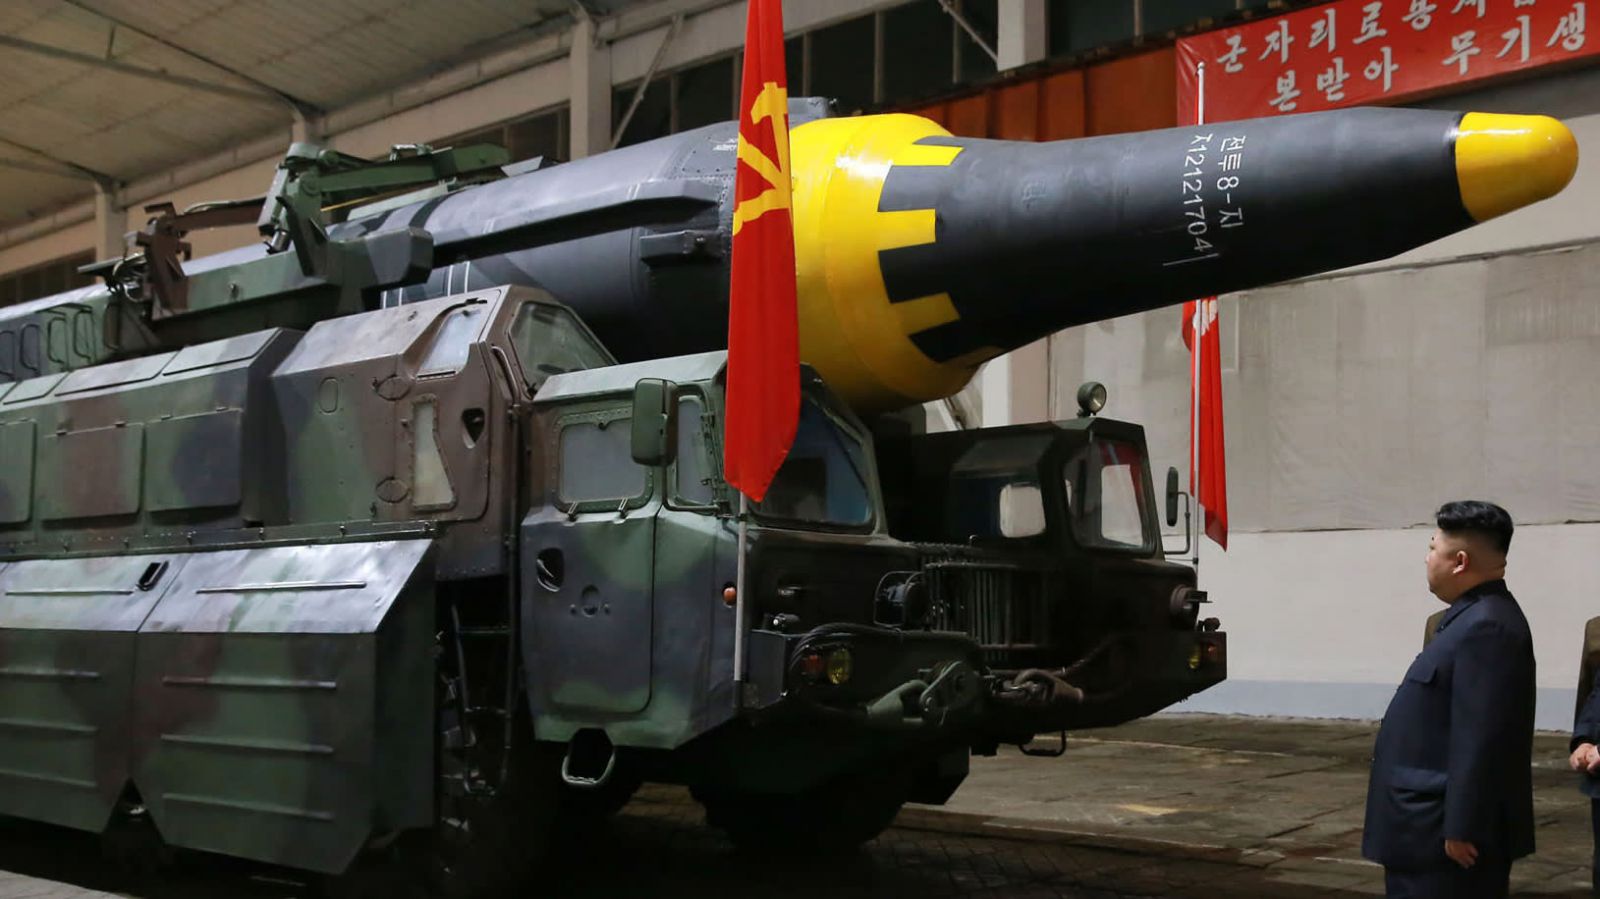 Nhà lãnh đạo Triều Tiên Kim Jong Un kiểm tra một tên lửa đạn đạo tầm trung Hwasong-12. Những người hàng xóm như Nhật Bản lo lắng kho vũ khí tầm ngắn và trung bình của ông có thể còn nguyên vẹn. (KCNA / Kyodo)